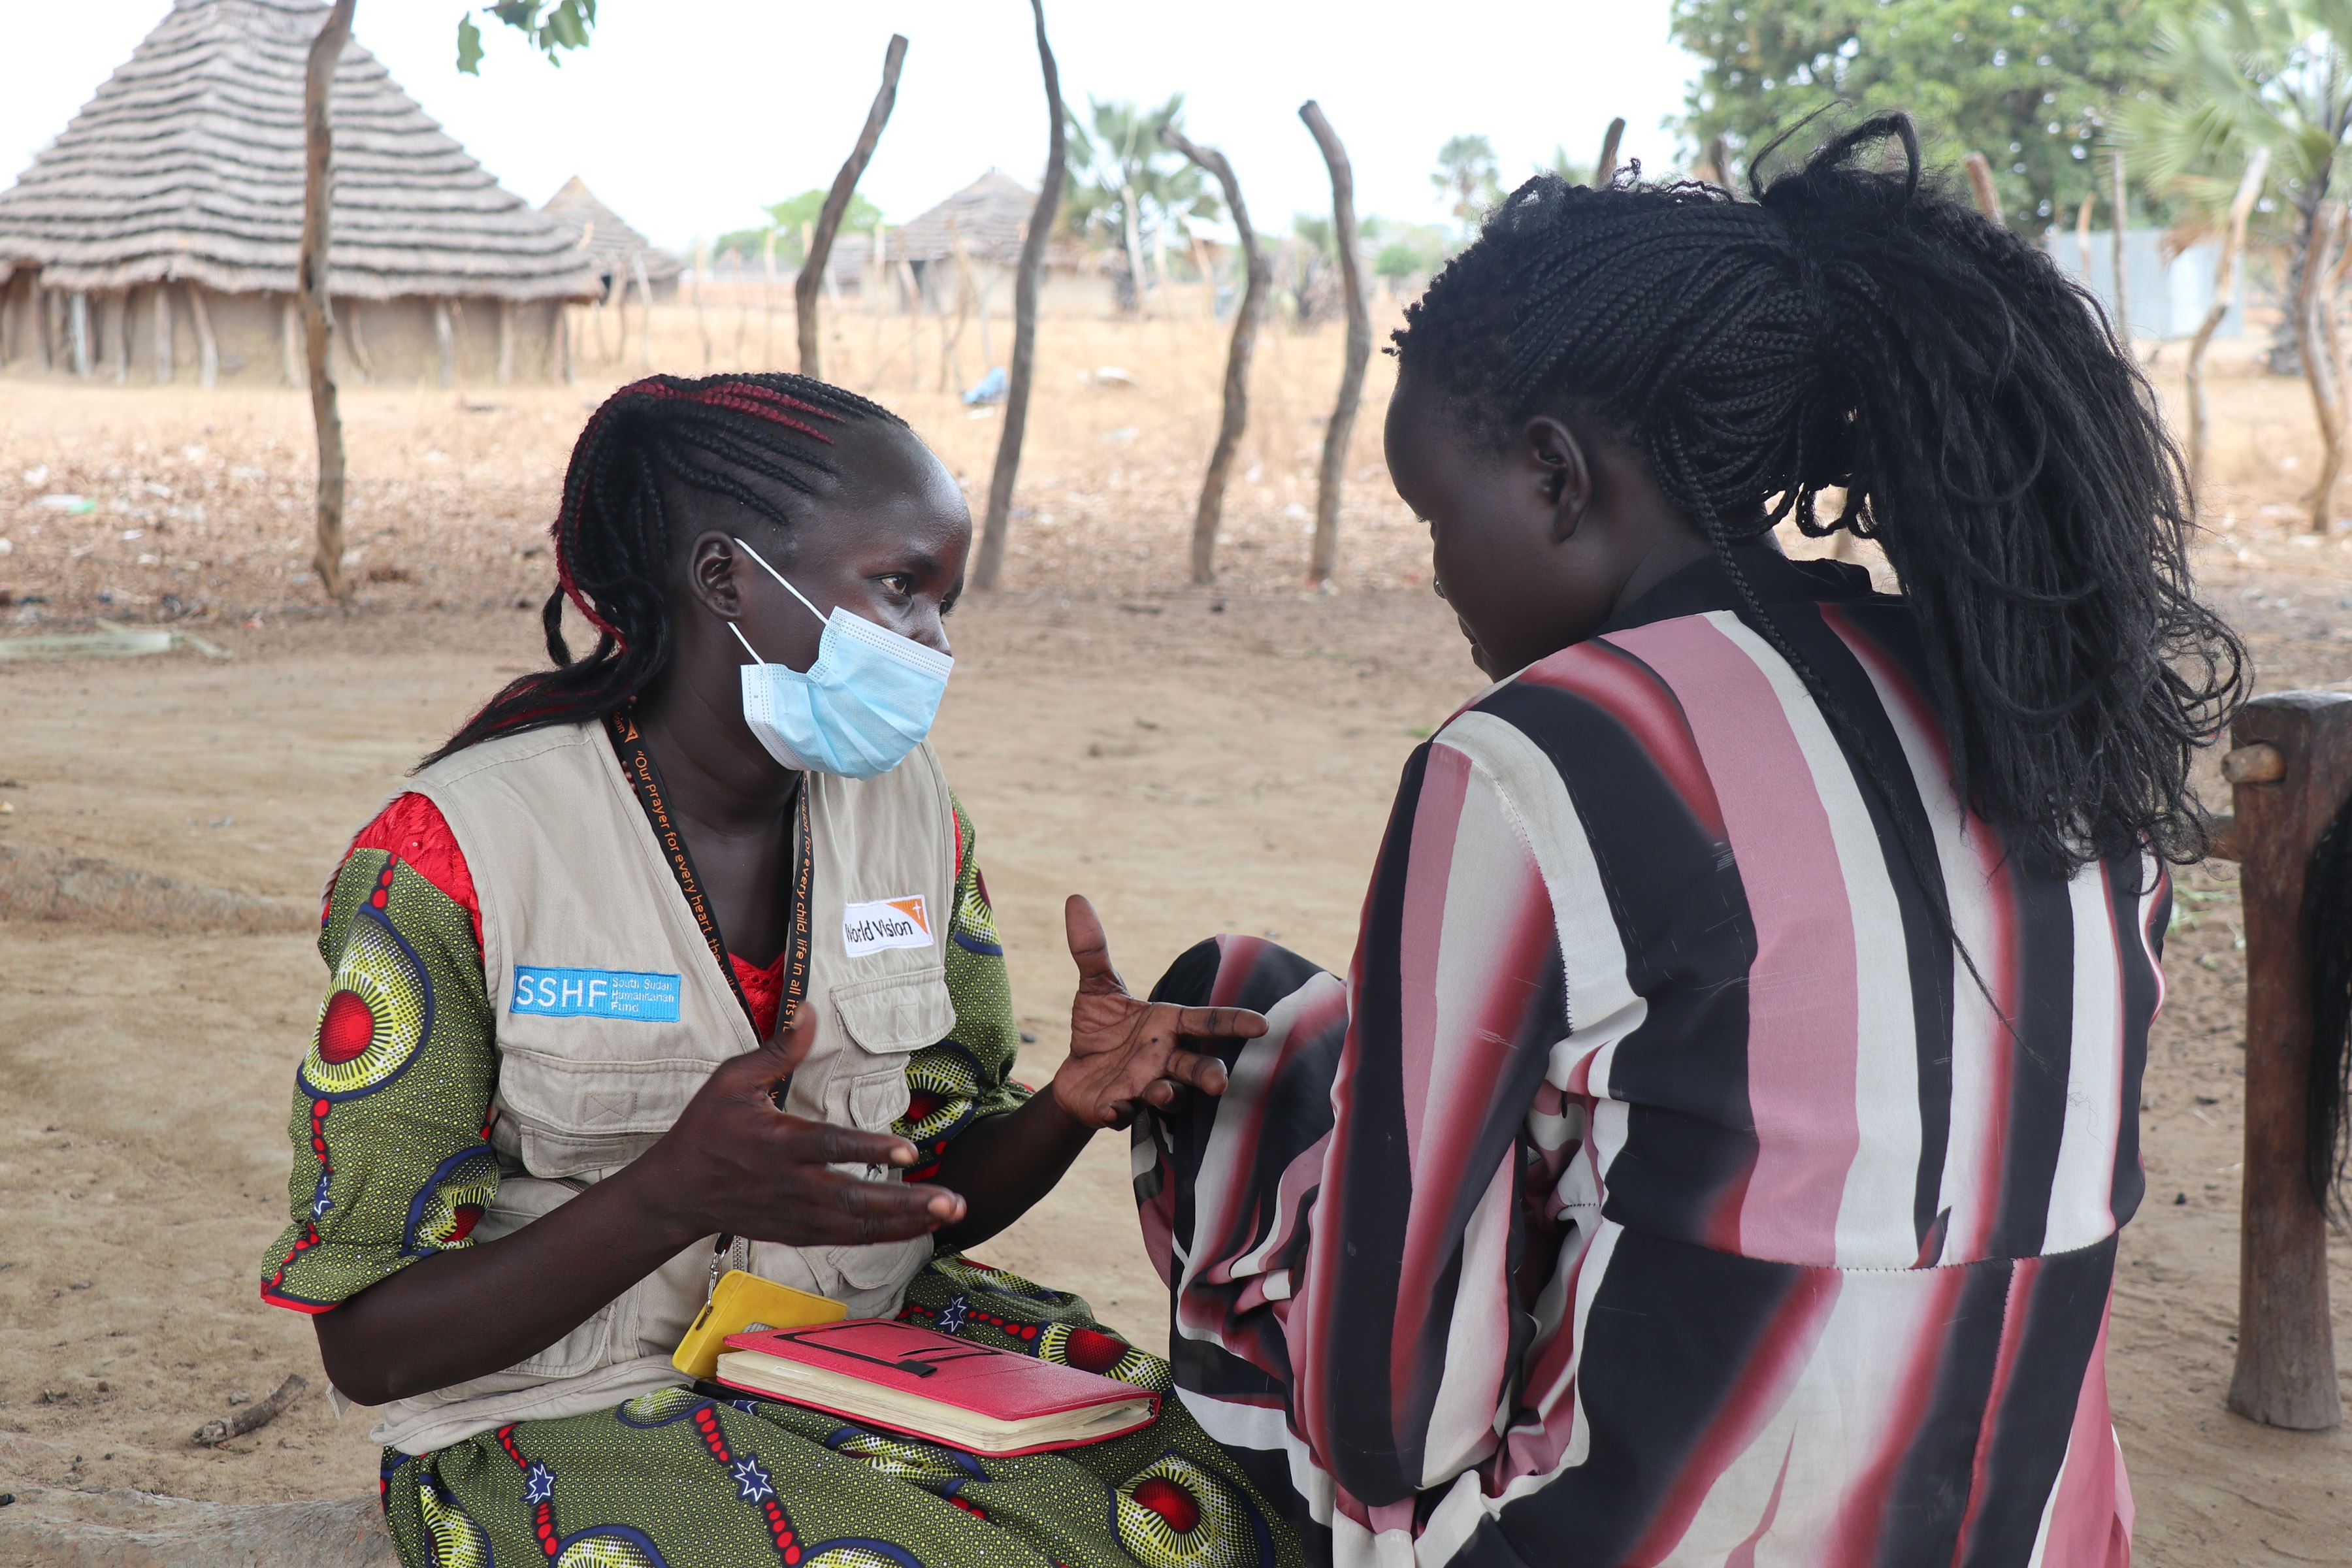 La trabajadora social de World Vision, Pasquina Diu, interactúa con la niña sudanesa Katina en una de sus visitas.